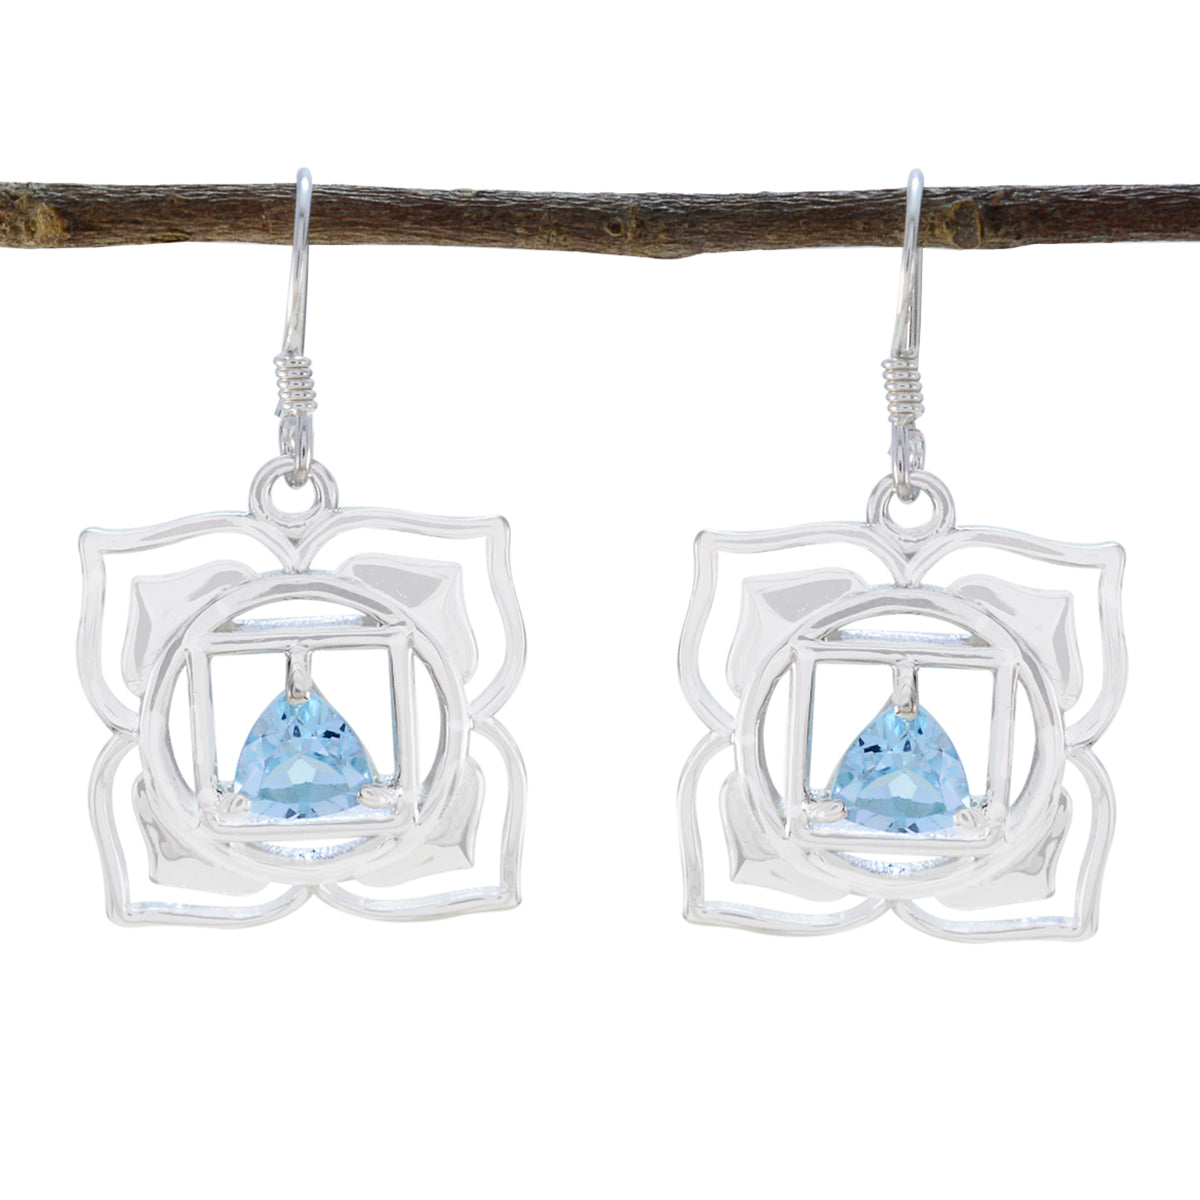 Riyo Smashing Sterling Silber Ohrring für Frauen Blauer Topas-Ohrring, Lünettenfassung, blauer Ohrring, baumelnder Ohrring